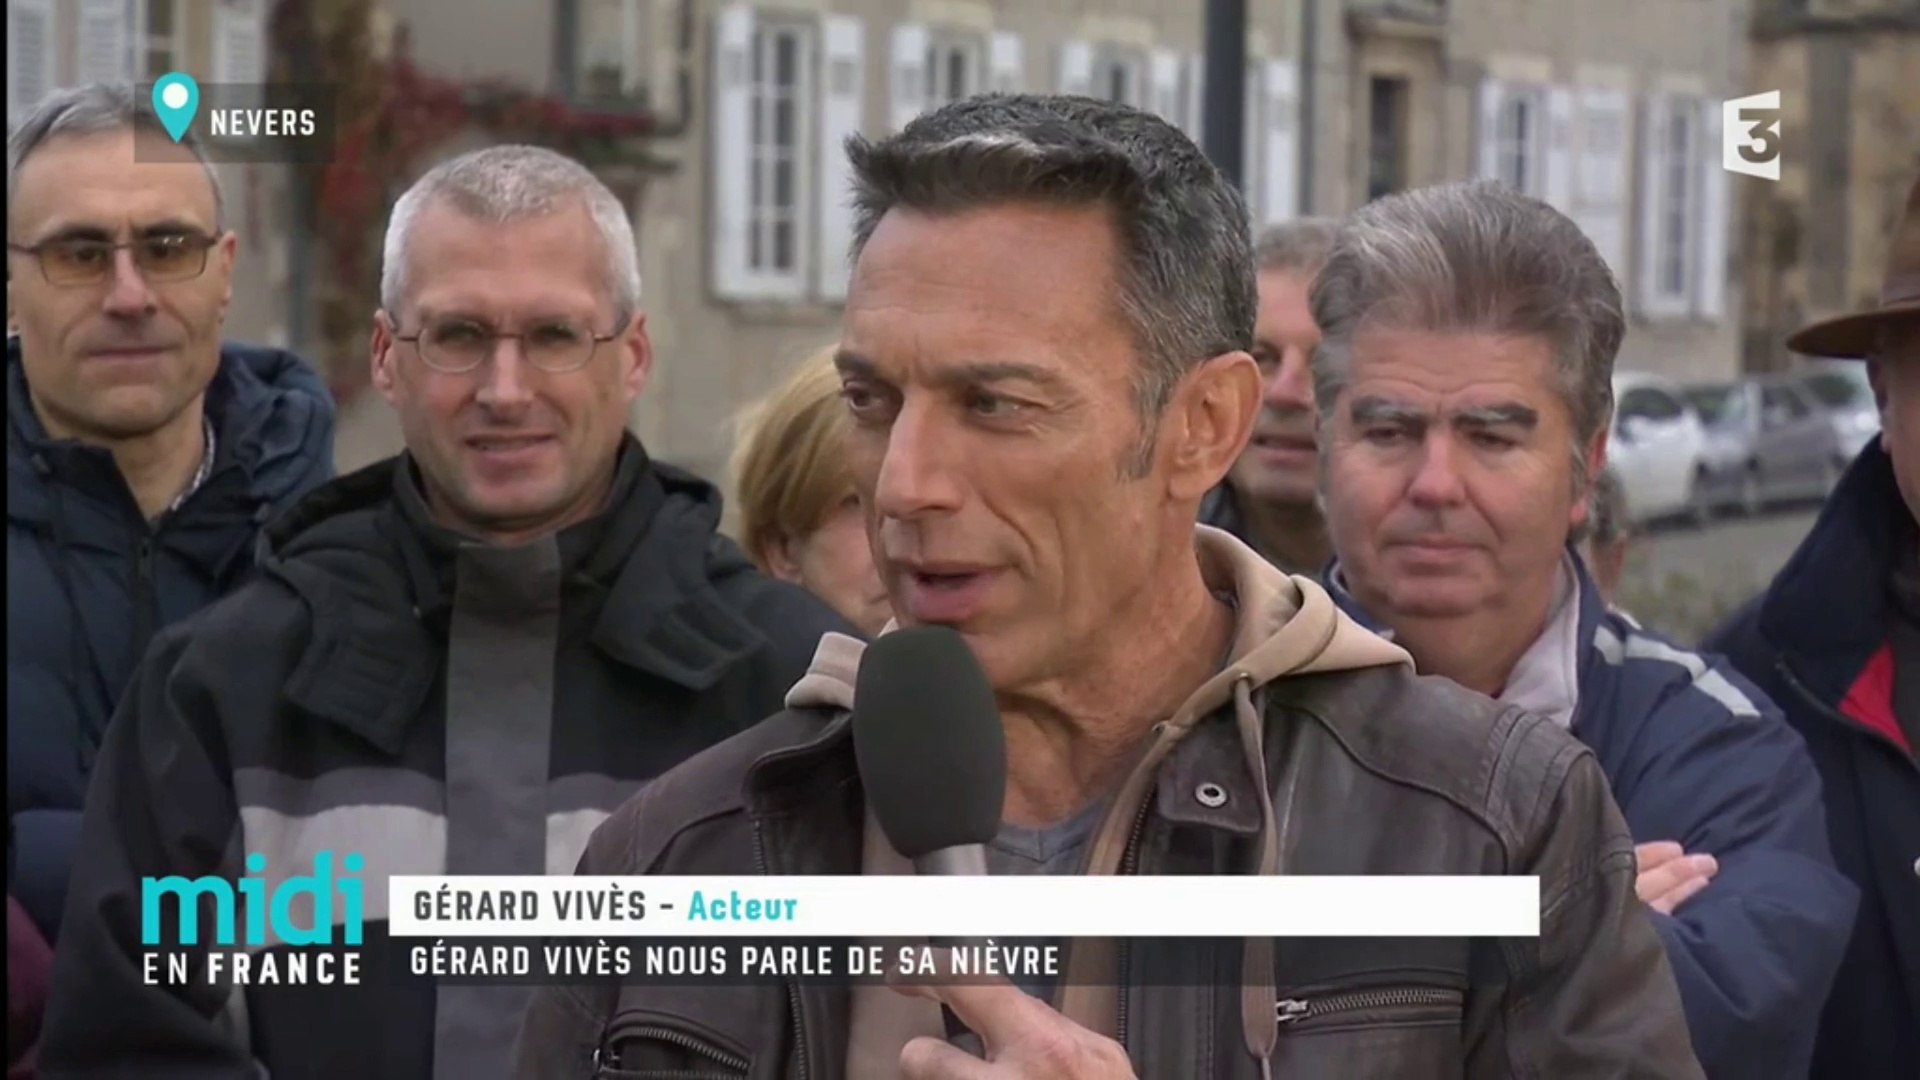 04/12/17] Gérard Vives invité dans l'émission "Midi en France" sur France3  - Vidéo Dailymotion